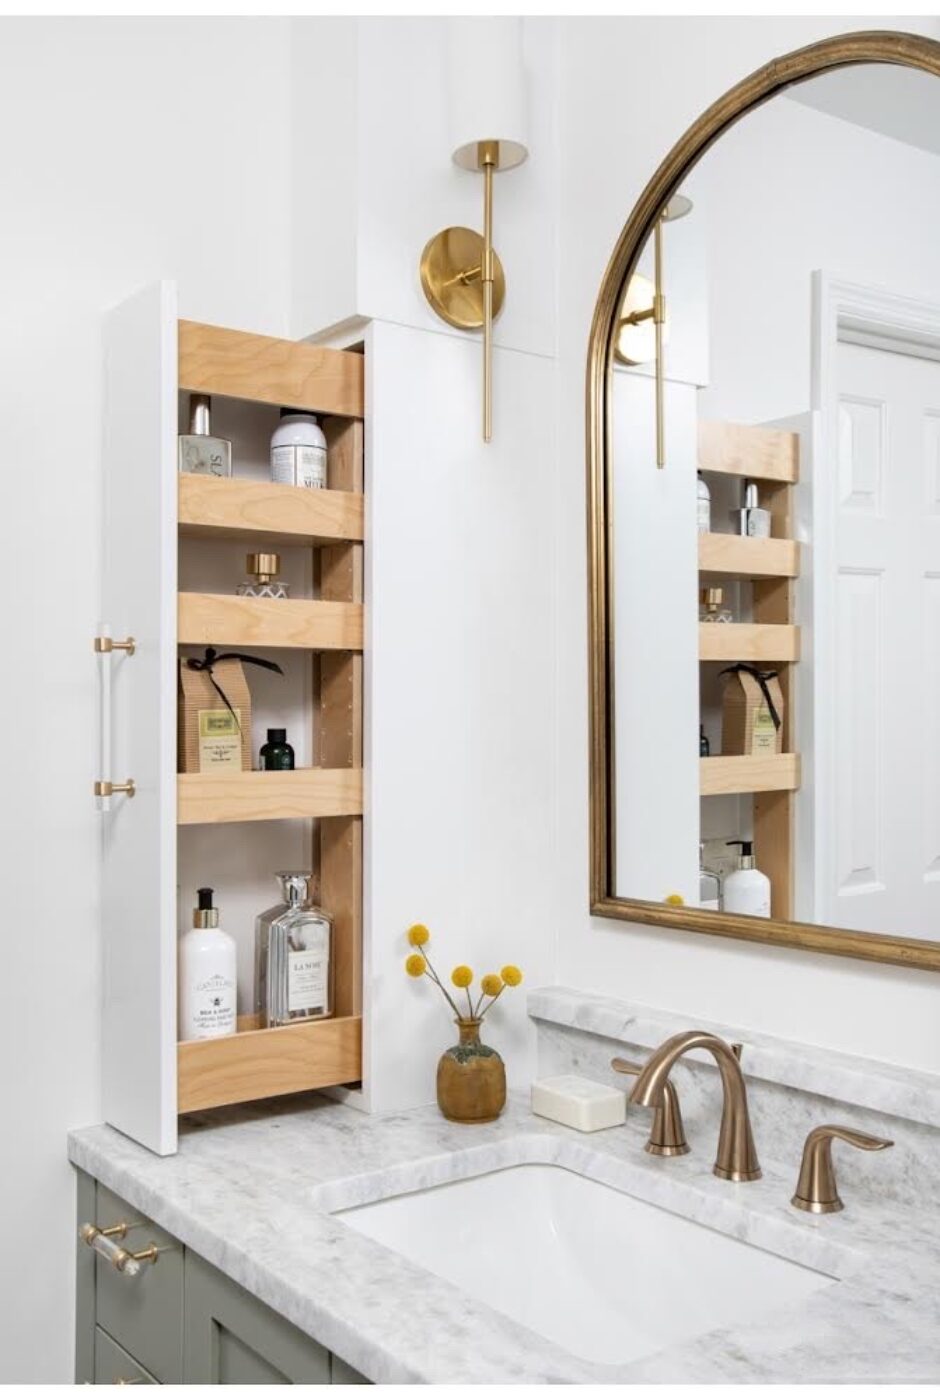 bathroom-vanity-slide-out-storage-medicine-cabinet